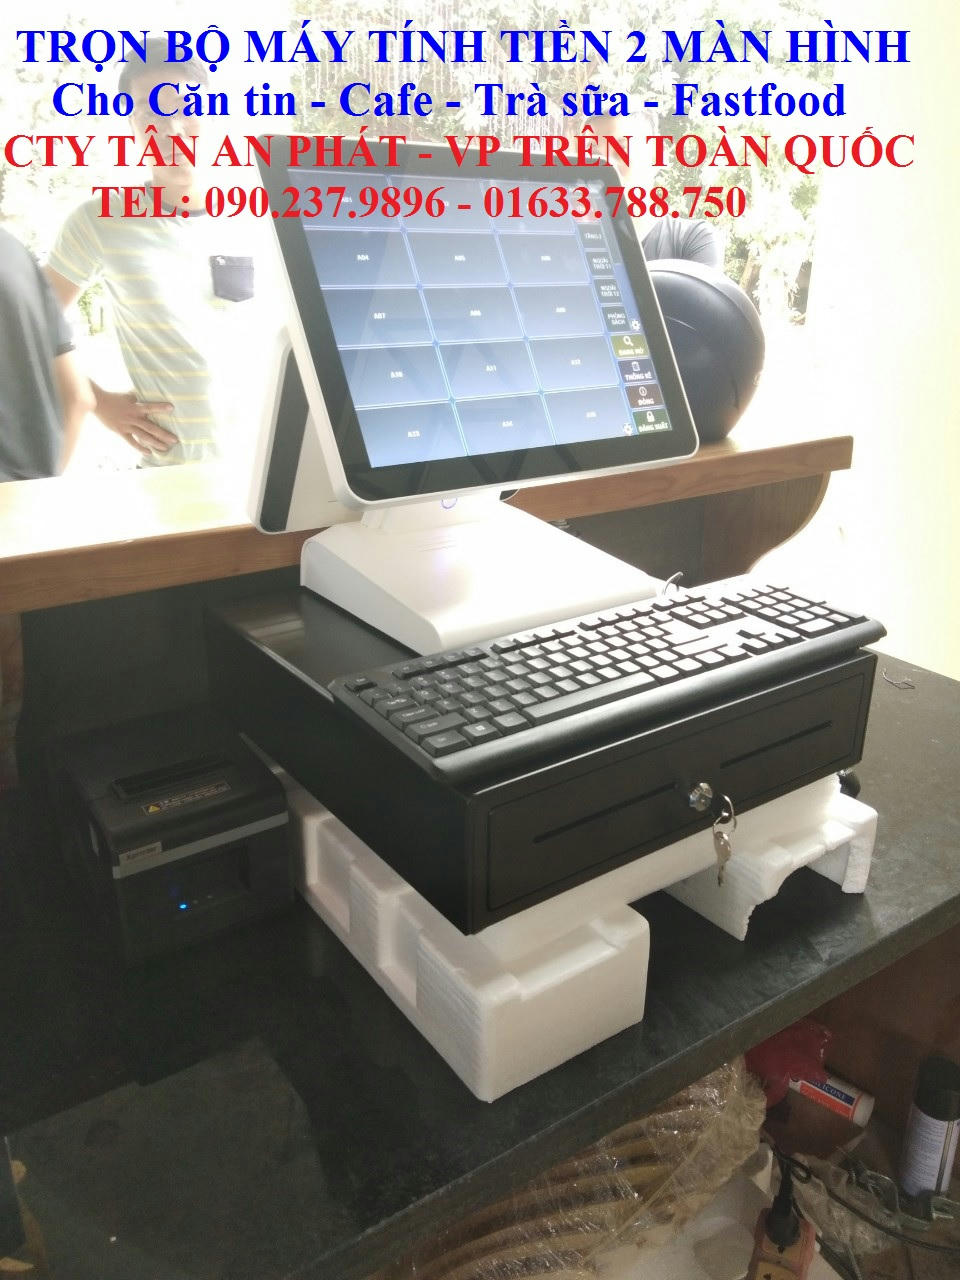 Máy tính tiền 2 màn hình cho quán trà sữa hiện đại tại Tphcm